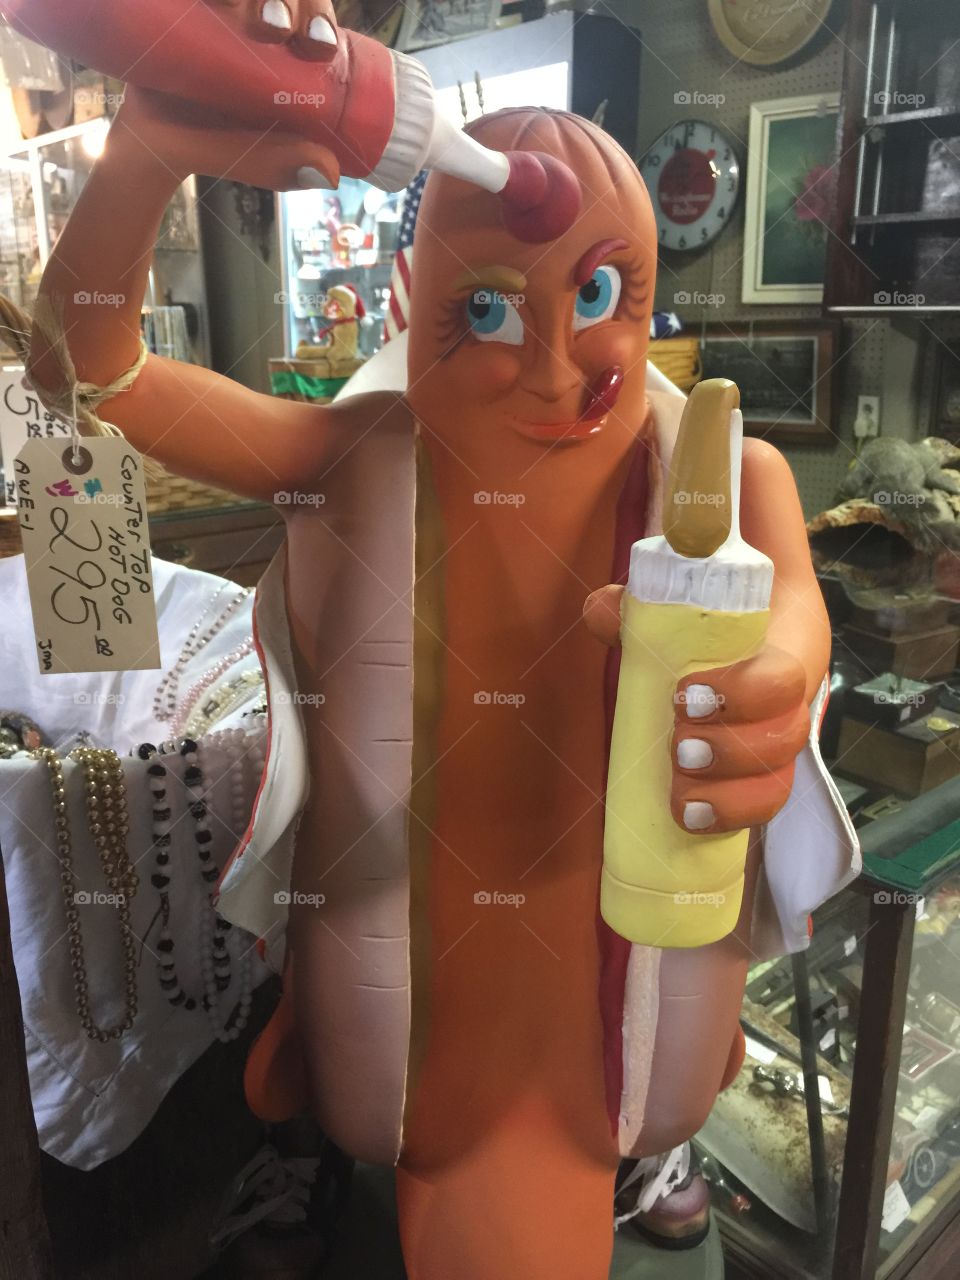 Wiener man